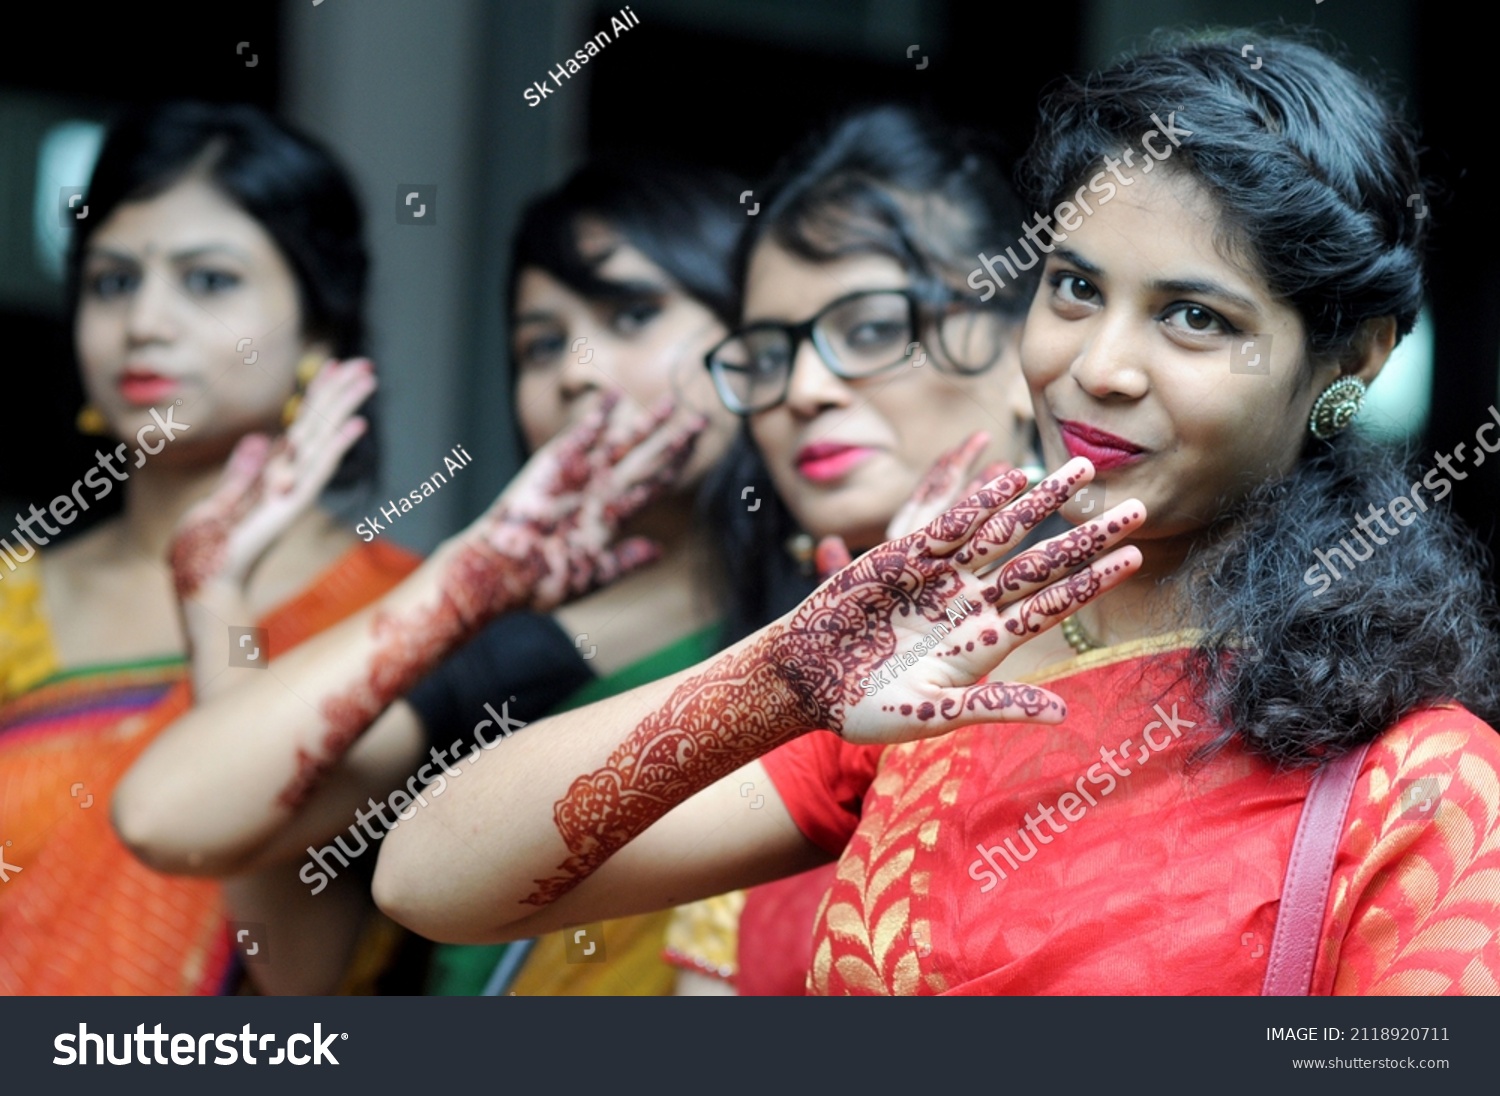 4 460 рез. по запросу "Girl dhaka" - изображения, стоковые фотогр...